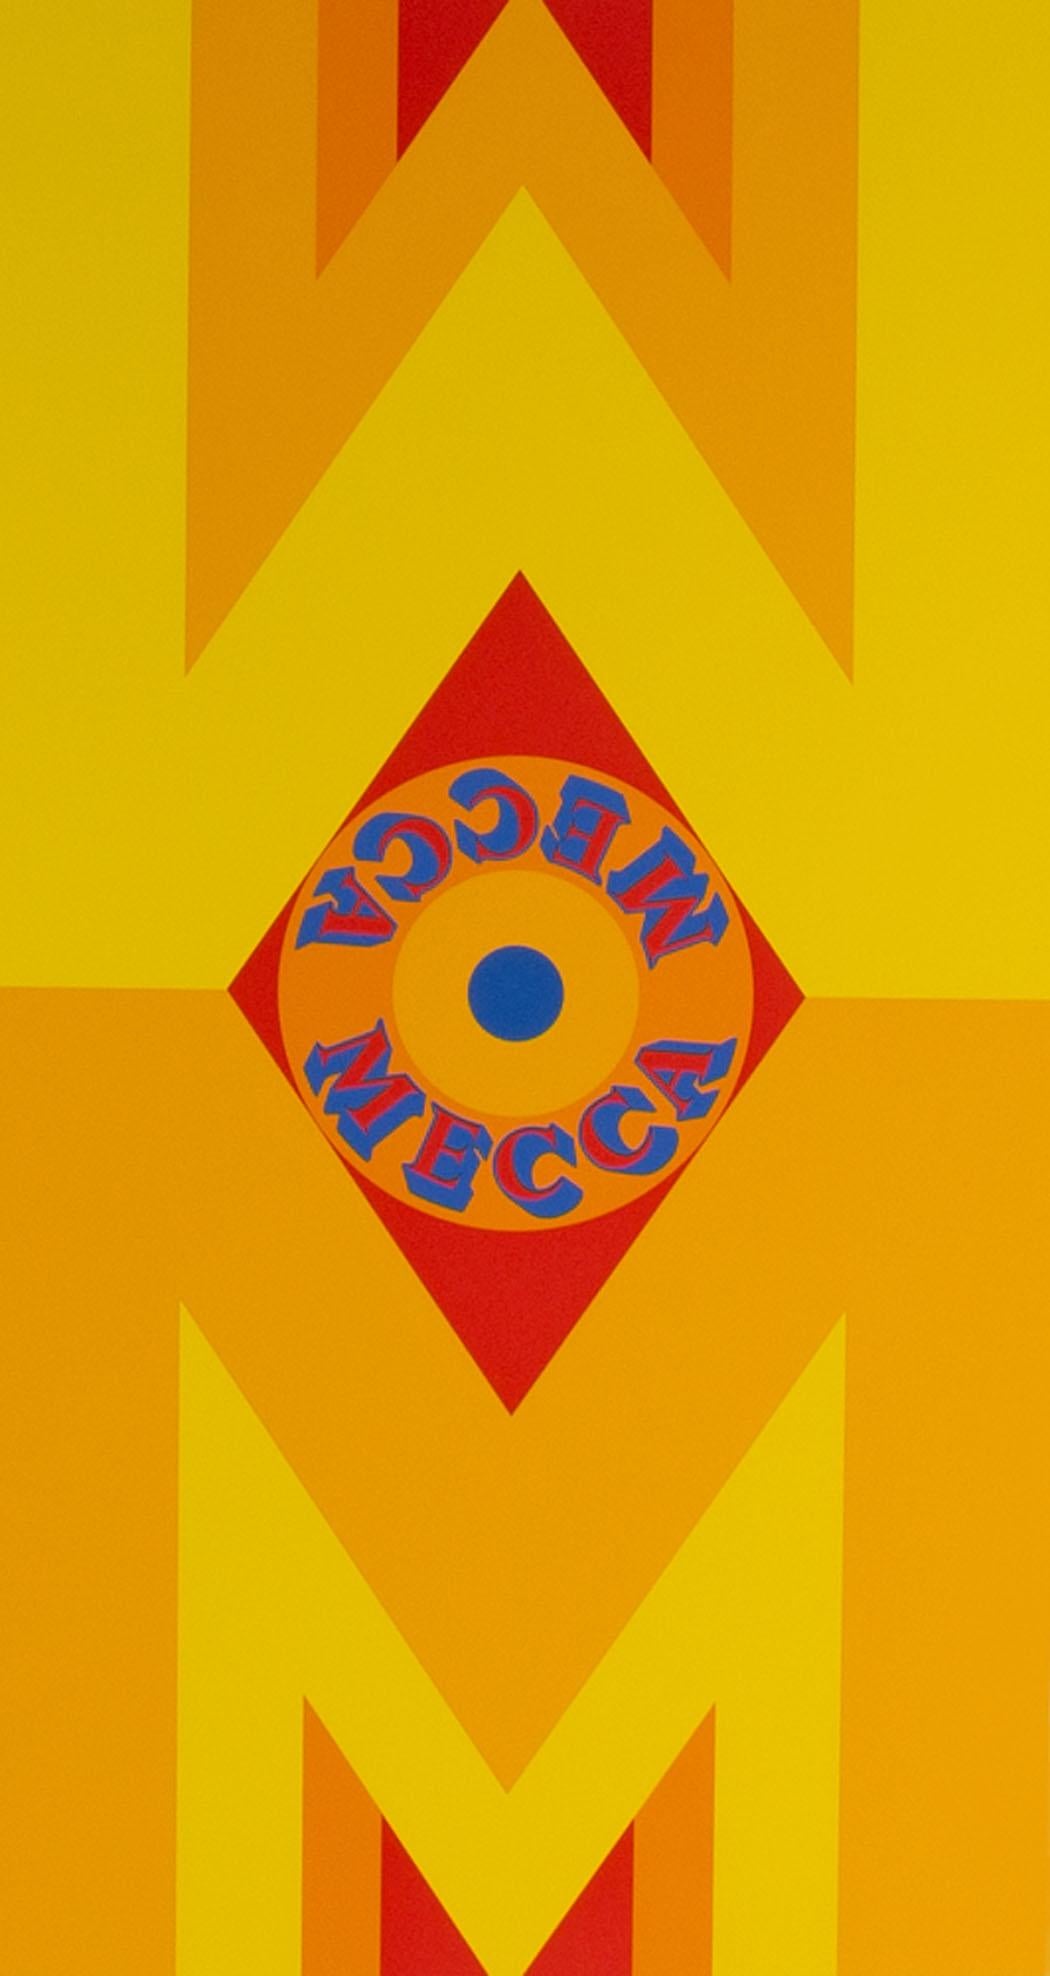 Une sérigraphie en édition limitée de 1977 intitulée Mecca I de l'artiste américain Robert Indiana (1928-2018). Imprimée sur du papier Arches 88, cette estampe représente deux formes de 